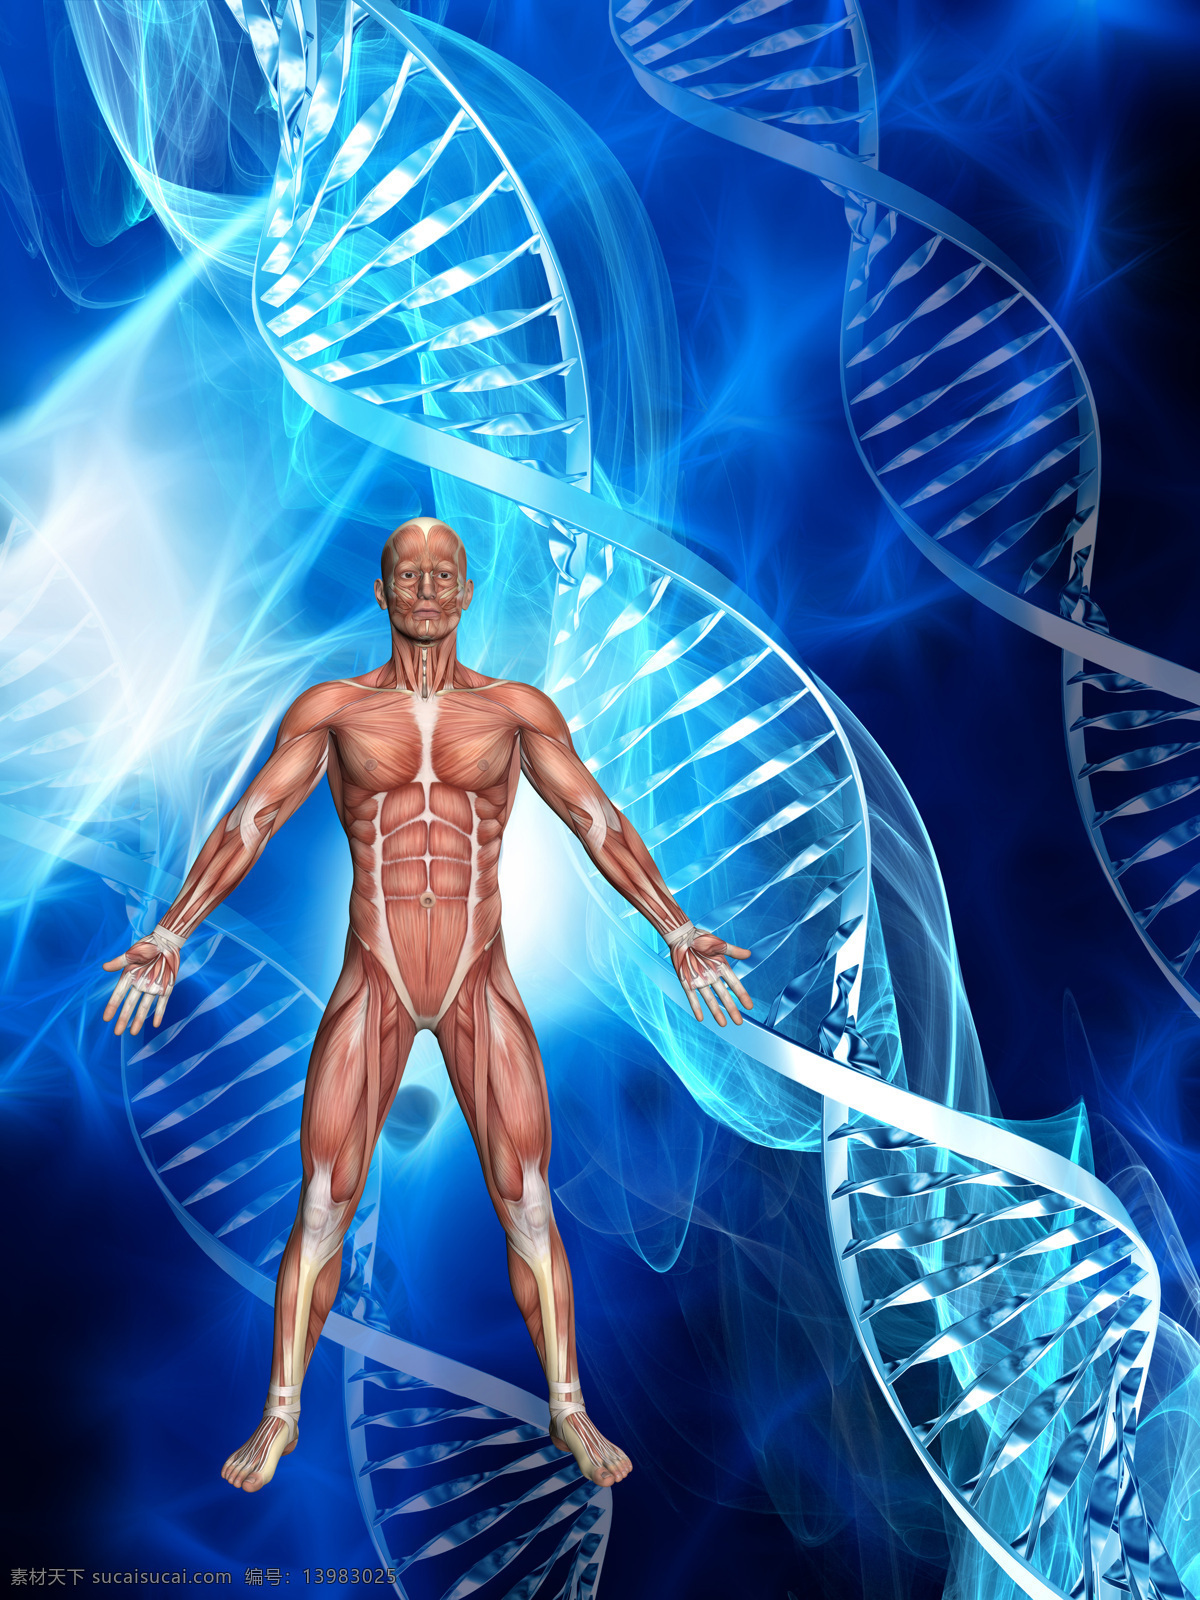 人体 模型 dna dna细胞 细胞 微观 基因 遗传 遗传密码 人体肌肉模型 摄影图片 现代科技 医疗护理